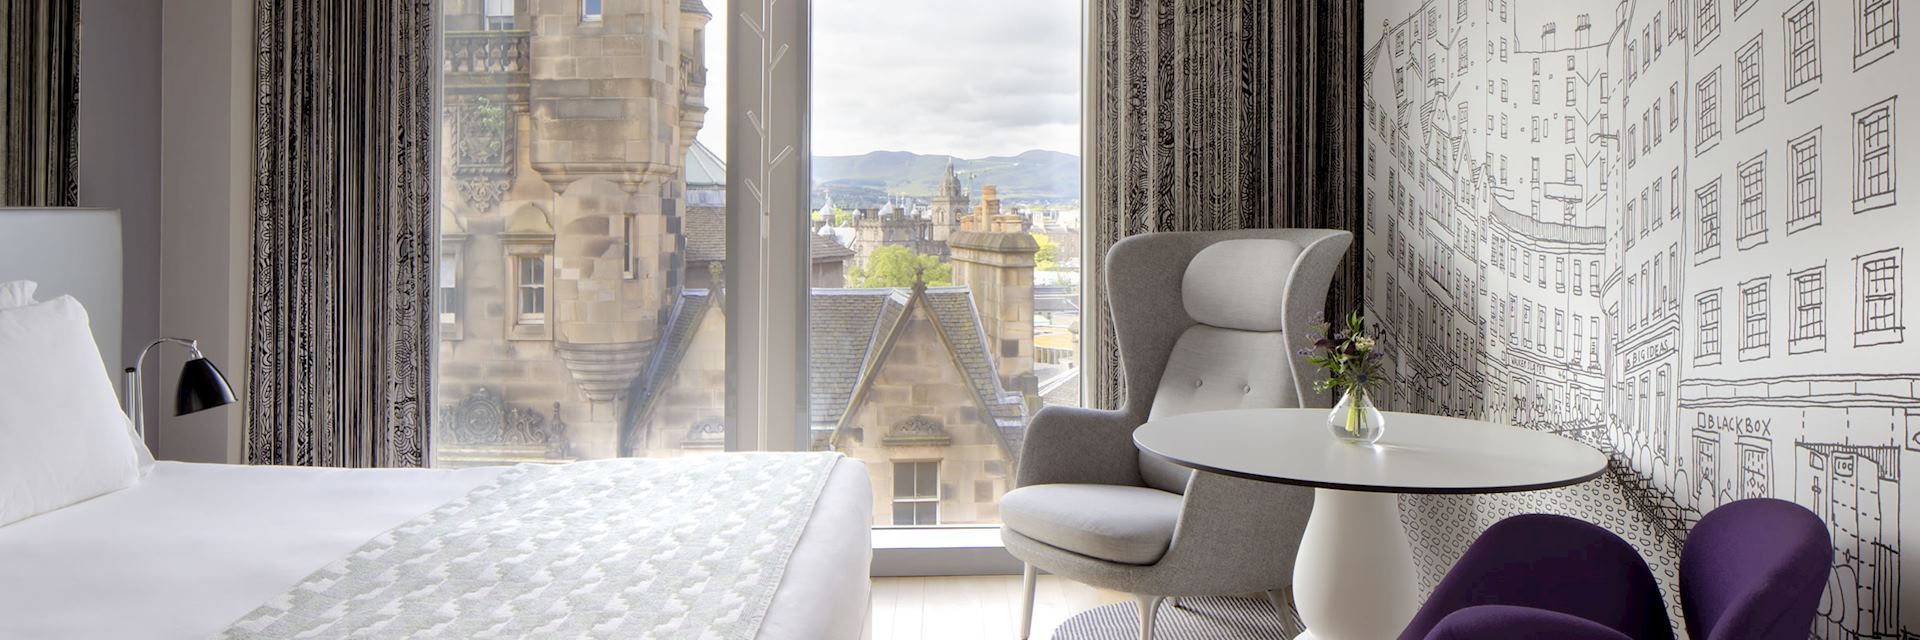 G&V Royal Mile Hotel, Edinburgh